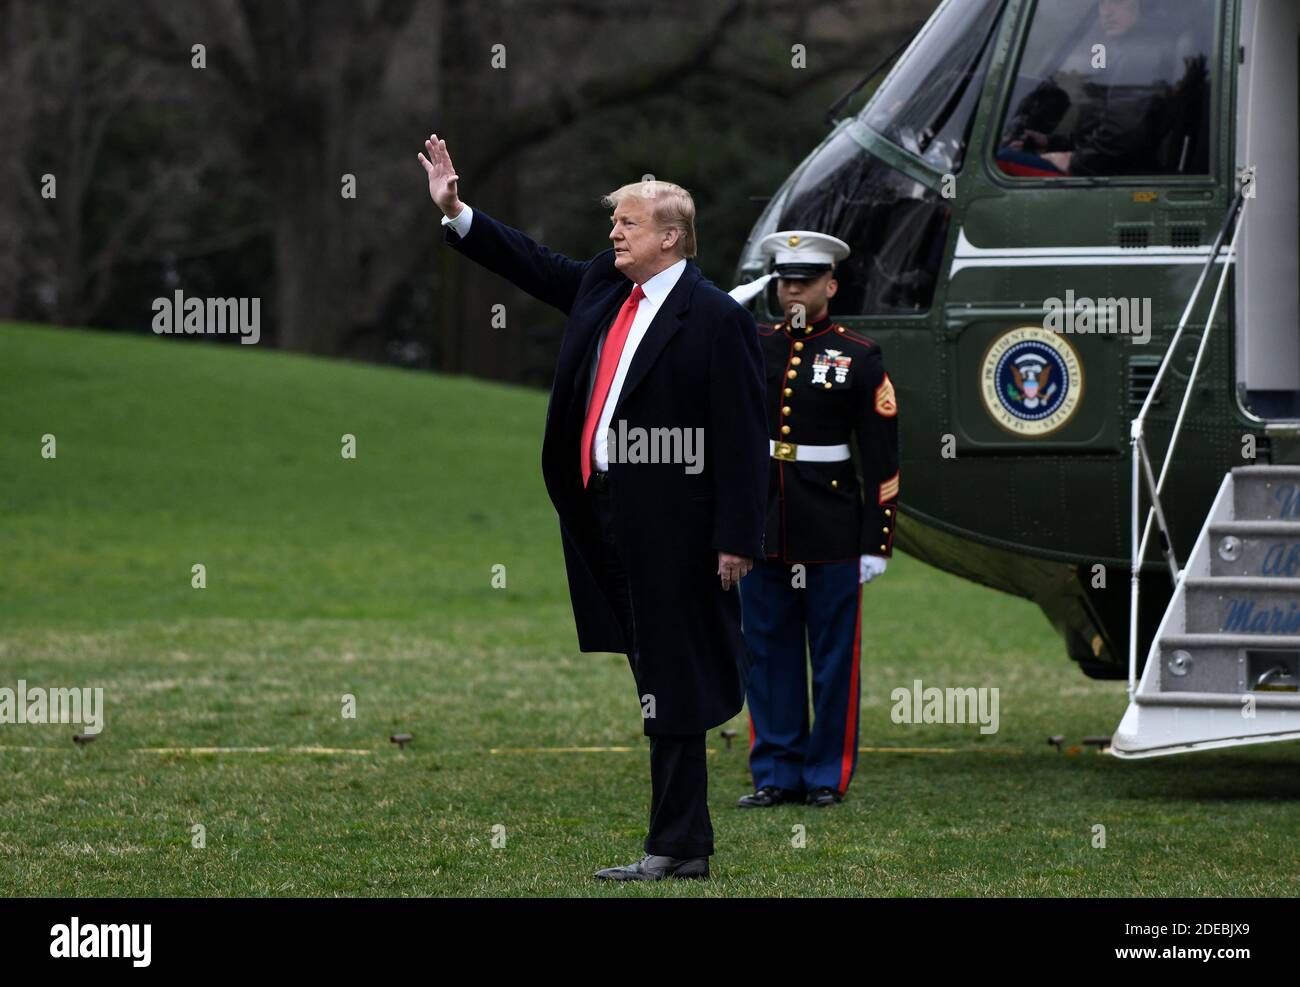 US-Präsident Donald Trump winkt, als er am Freitag, den 22. März 2019, das Weiße Haus auf dem Weg nach Florida verlässt. Foto von Olivier Douliery/ABACAPRESS.COM Stockfoto